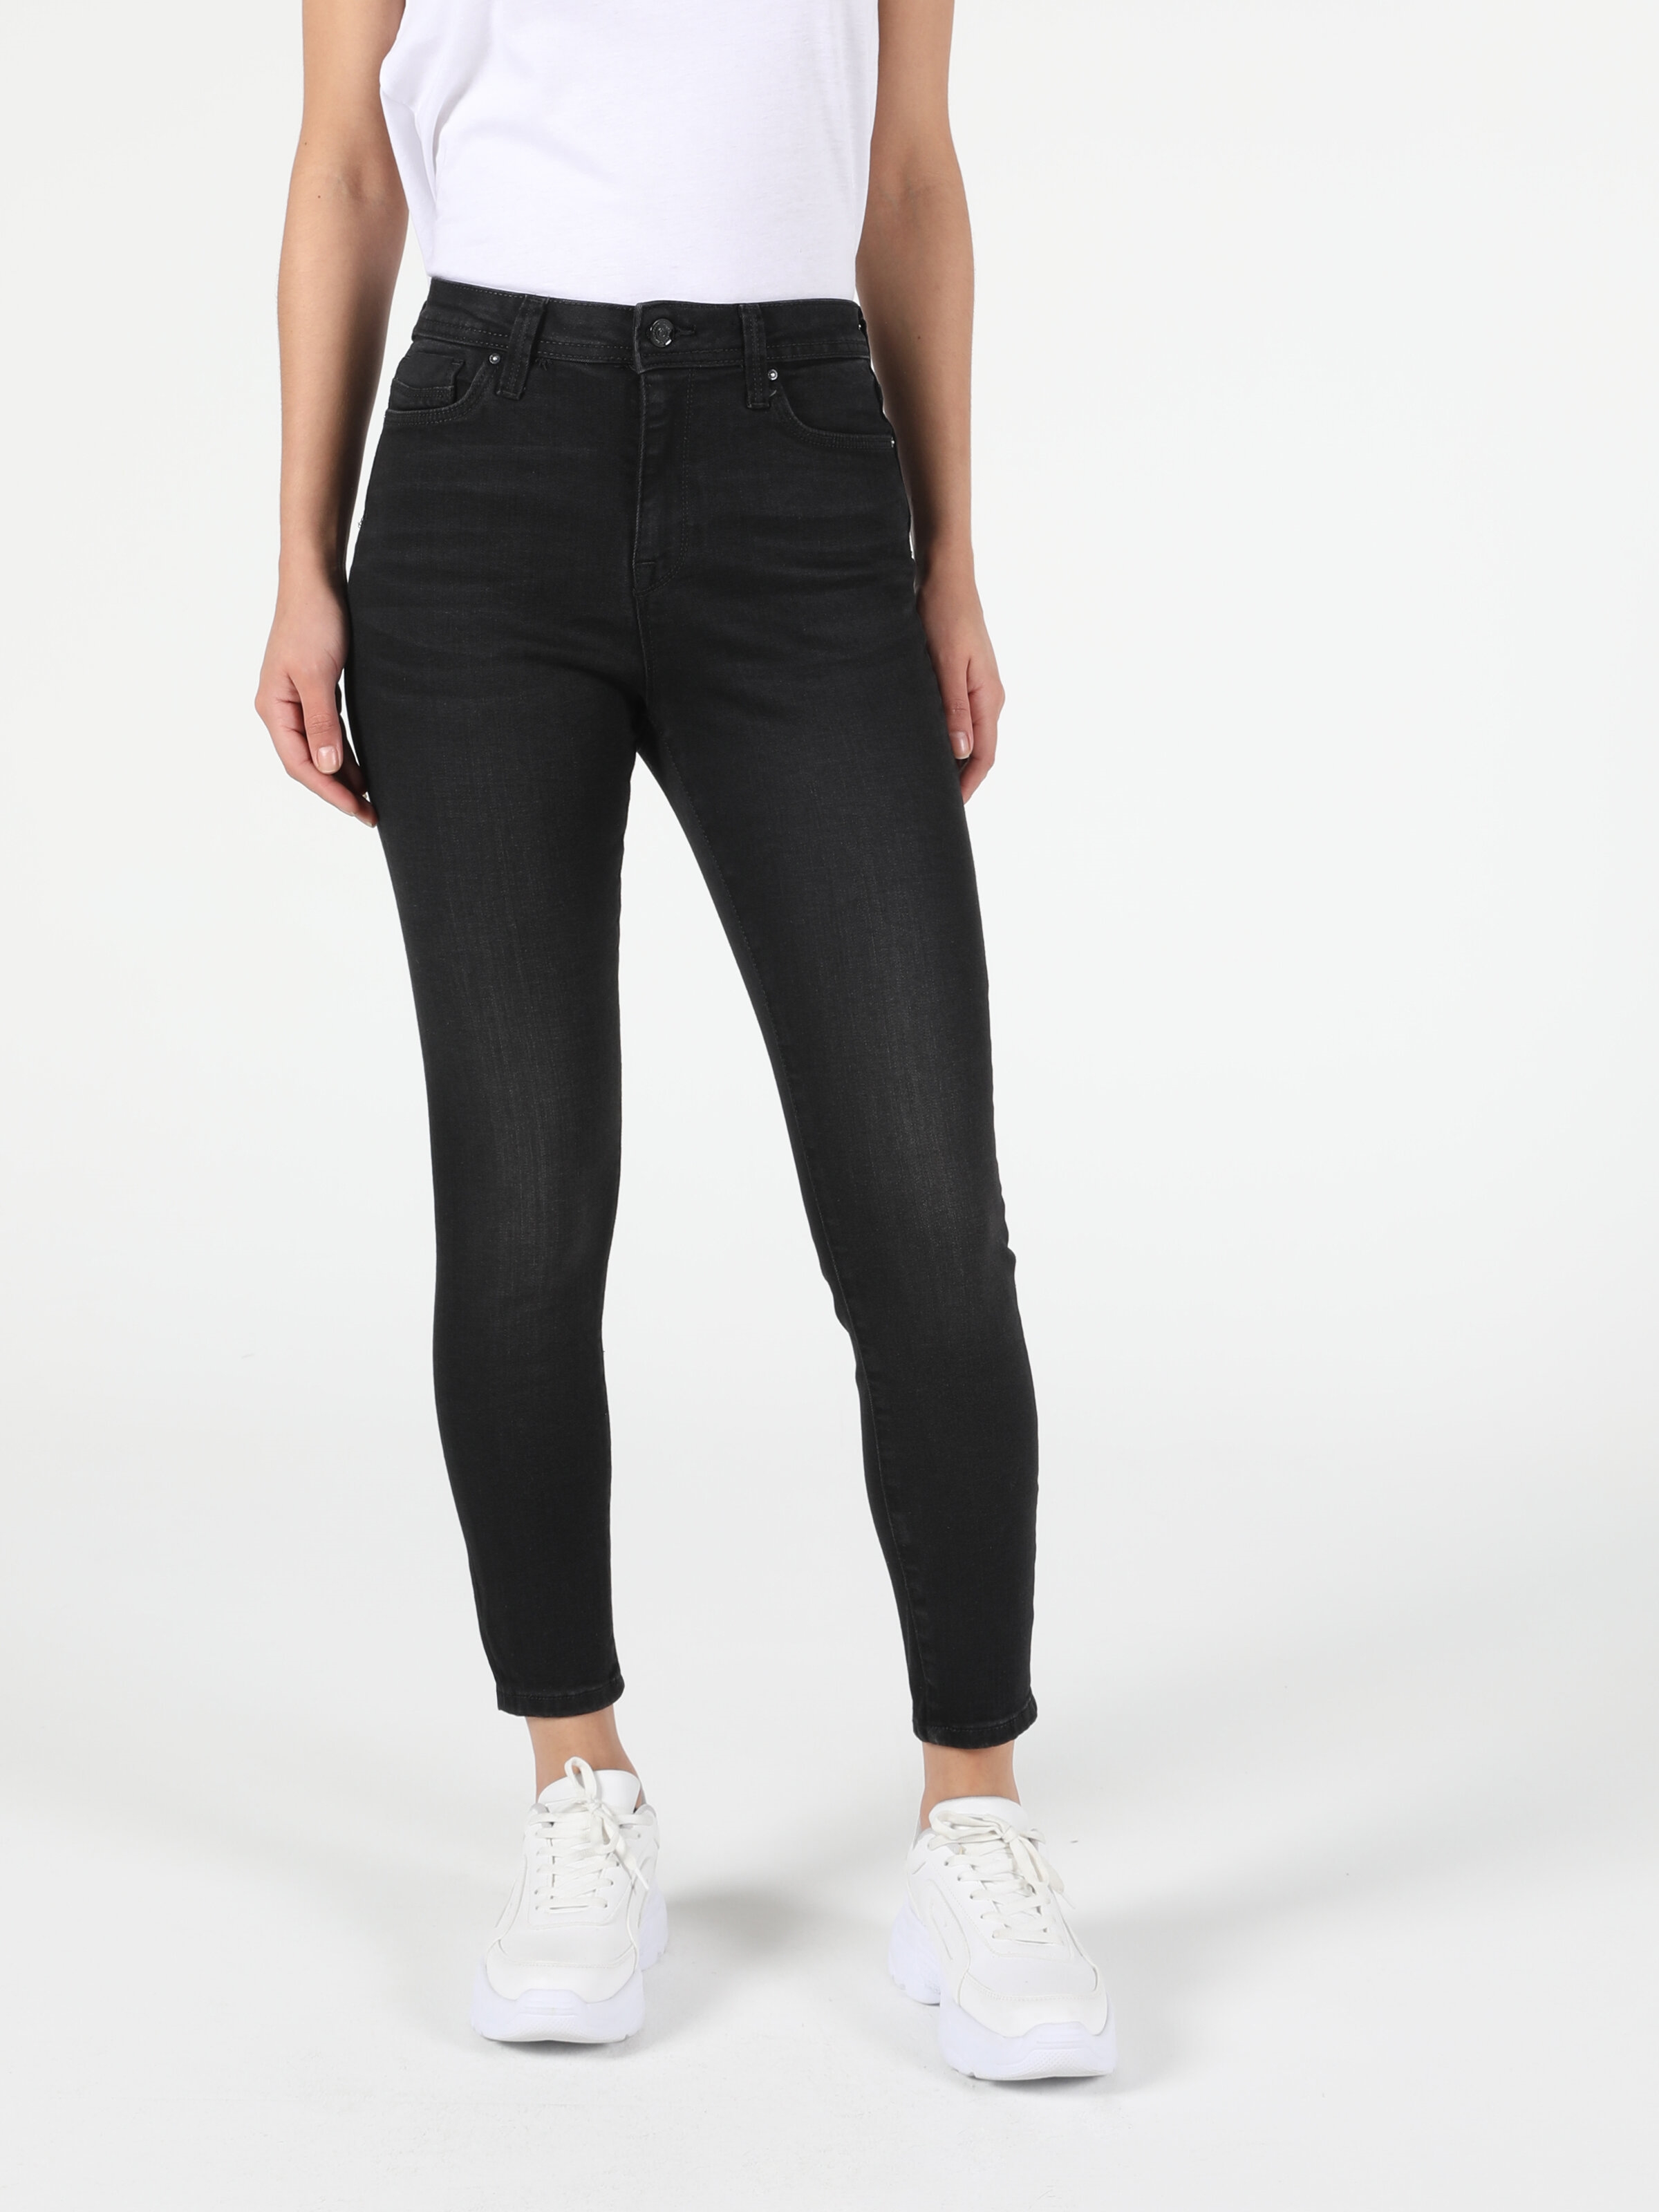 Colins 760 Dıana Yüksek Bel Dar Paça Super Slim Fit Siyah Kadın Jean Pantolon. 1